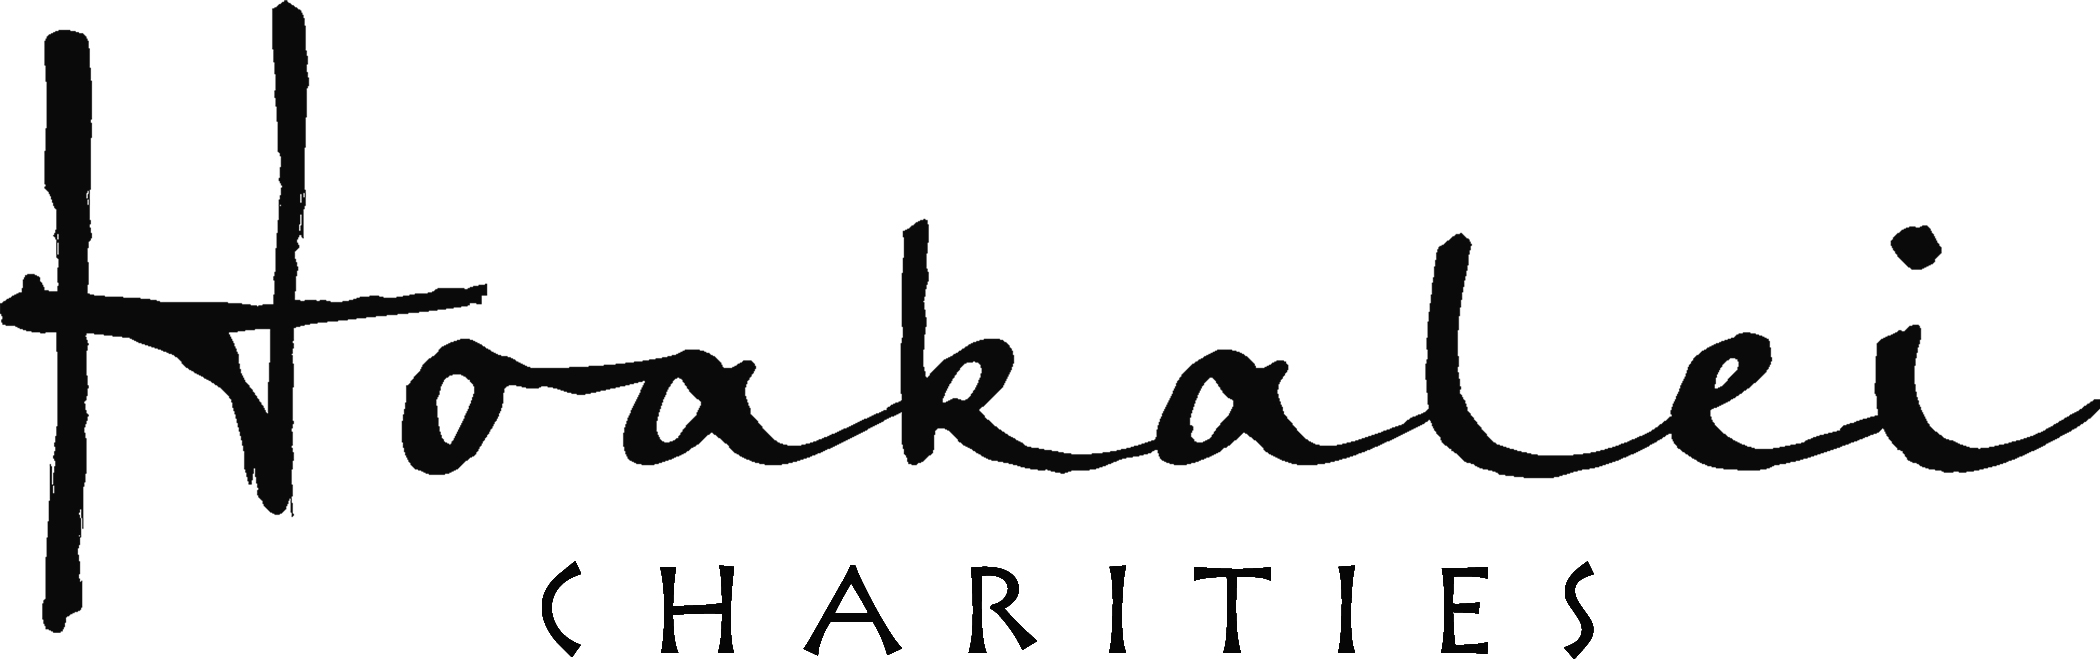 Hoakalei Charities